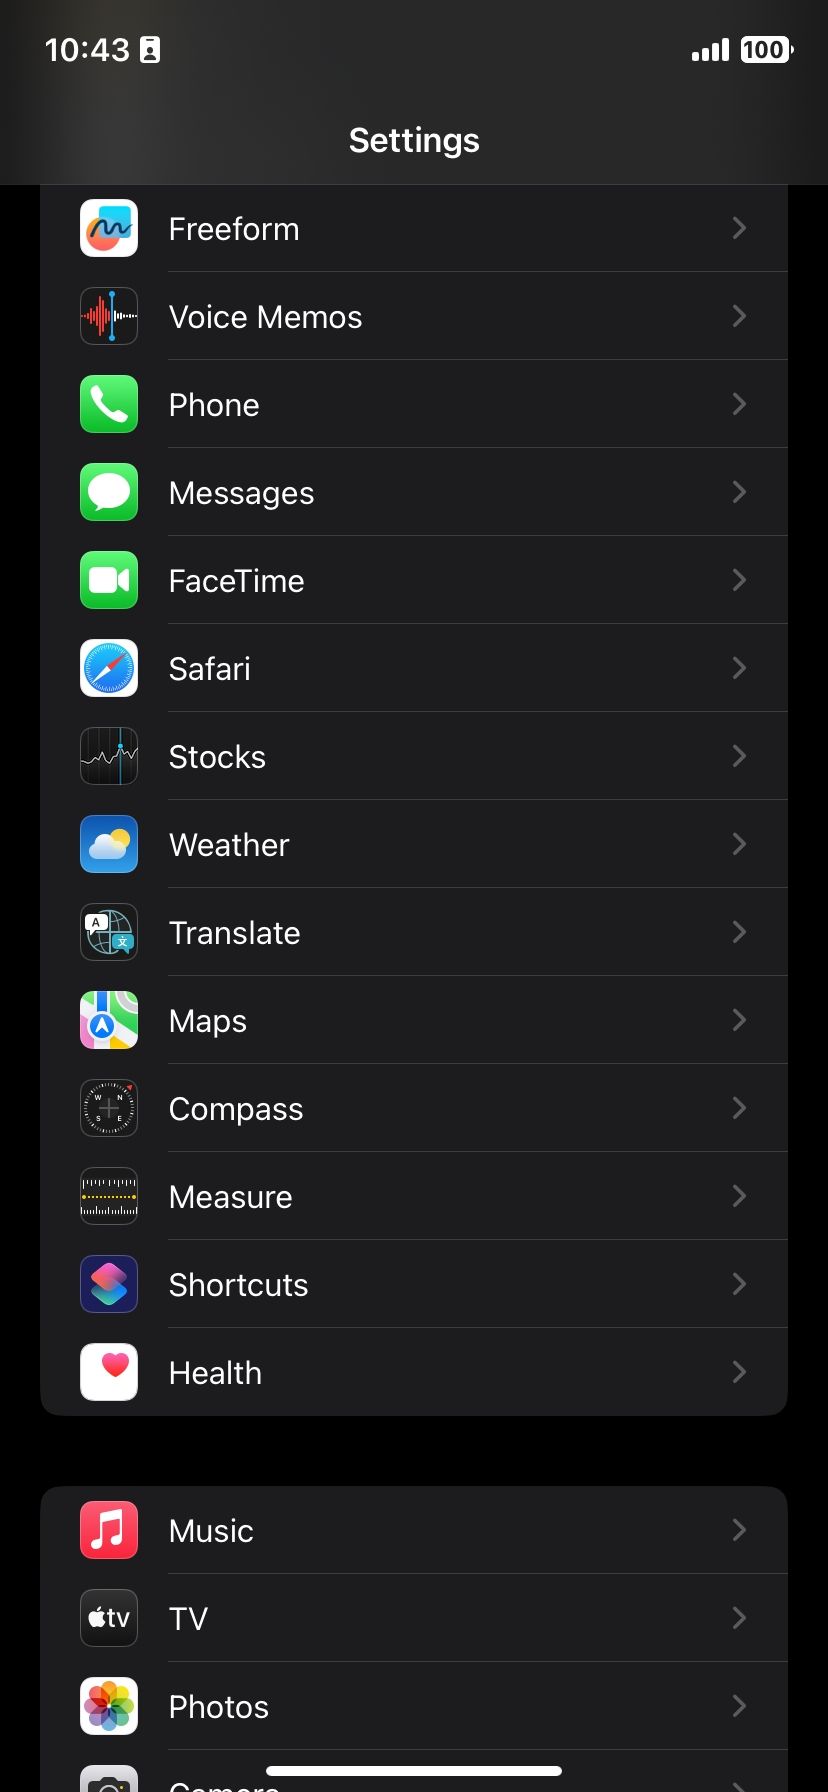 iOS Settings app